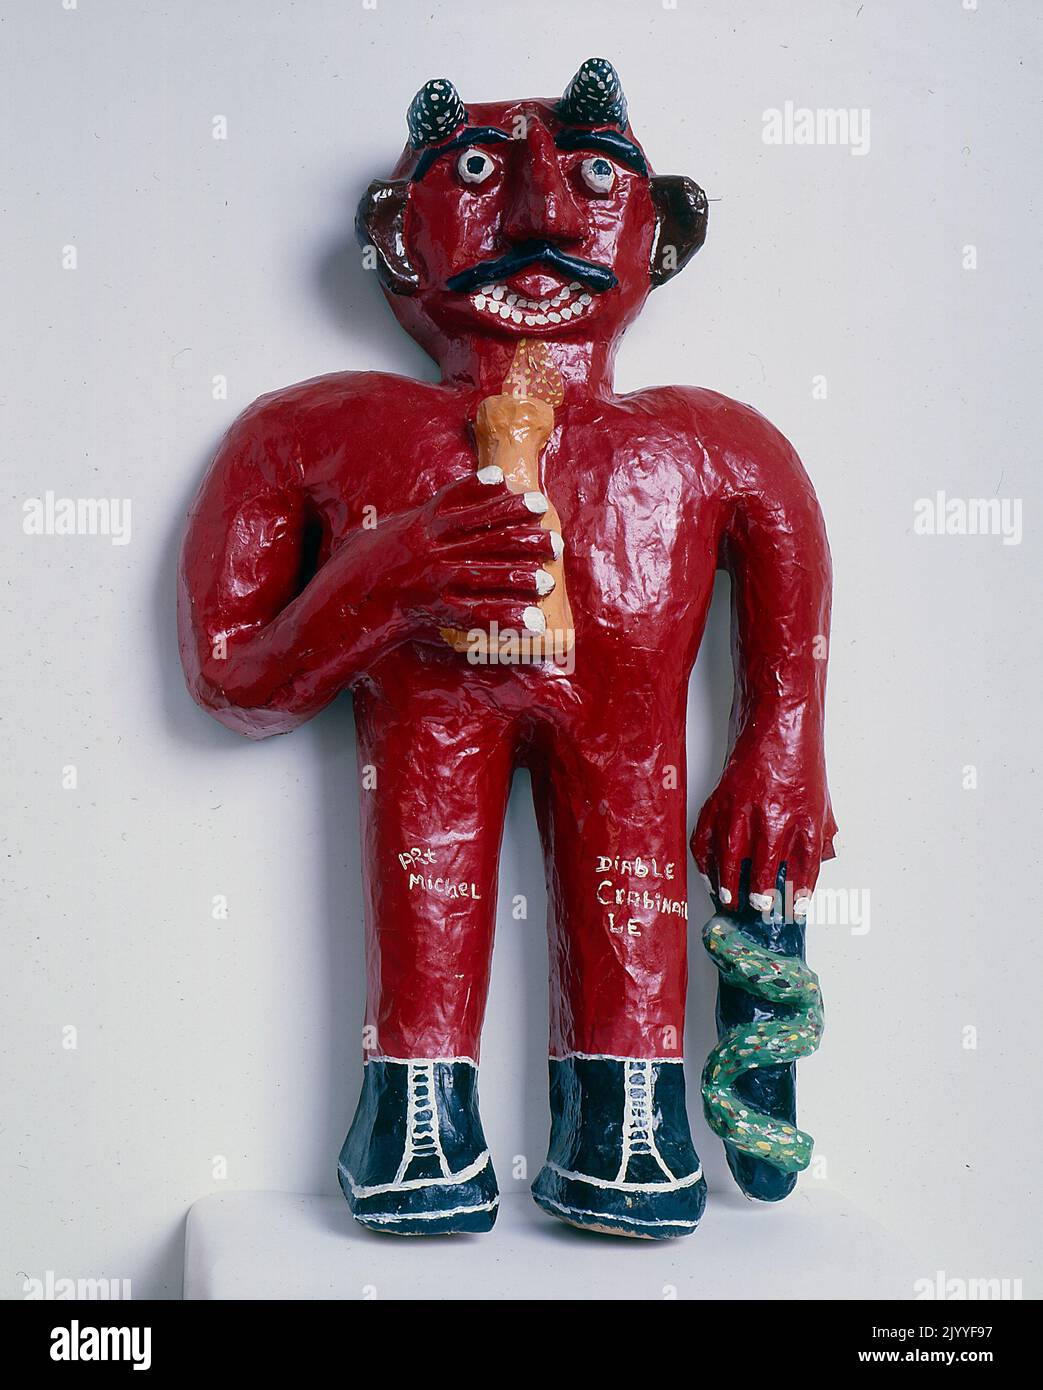 Fotografia a colori di una scultura del 3D di una figura diabolica che tiene una pentola in una mano e un oggetto intrecciato da un serpente nell'altra mano. Foto Stock